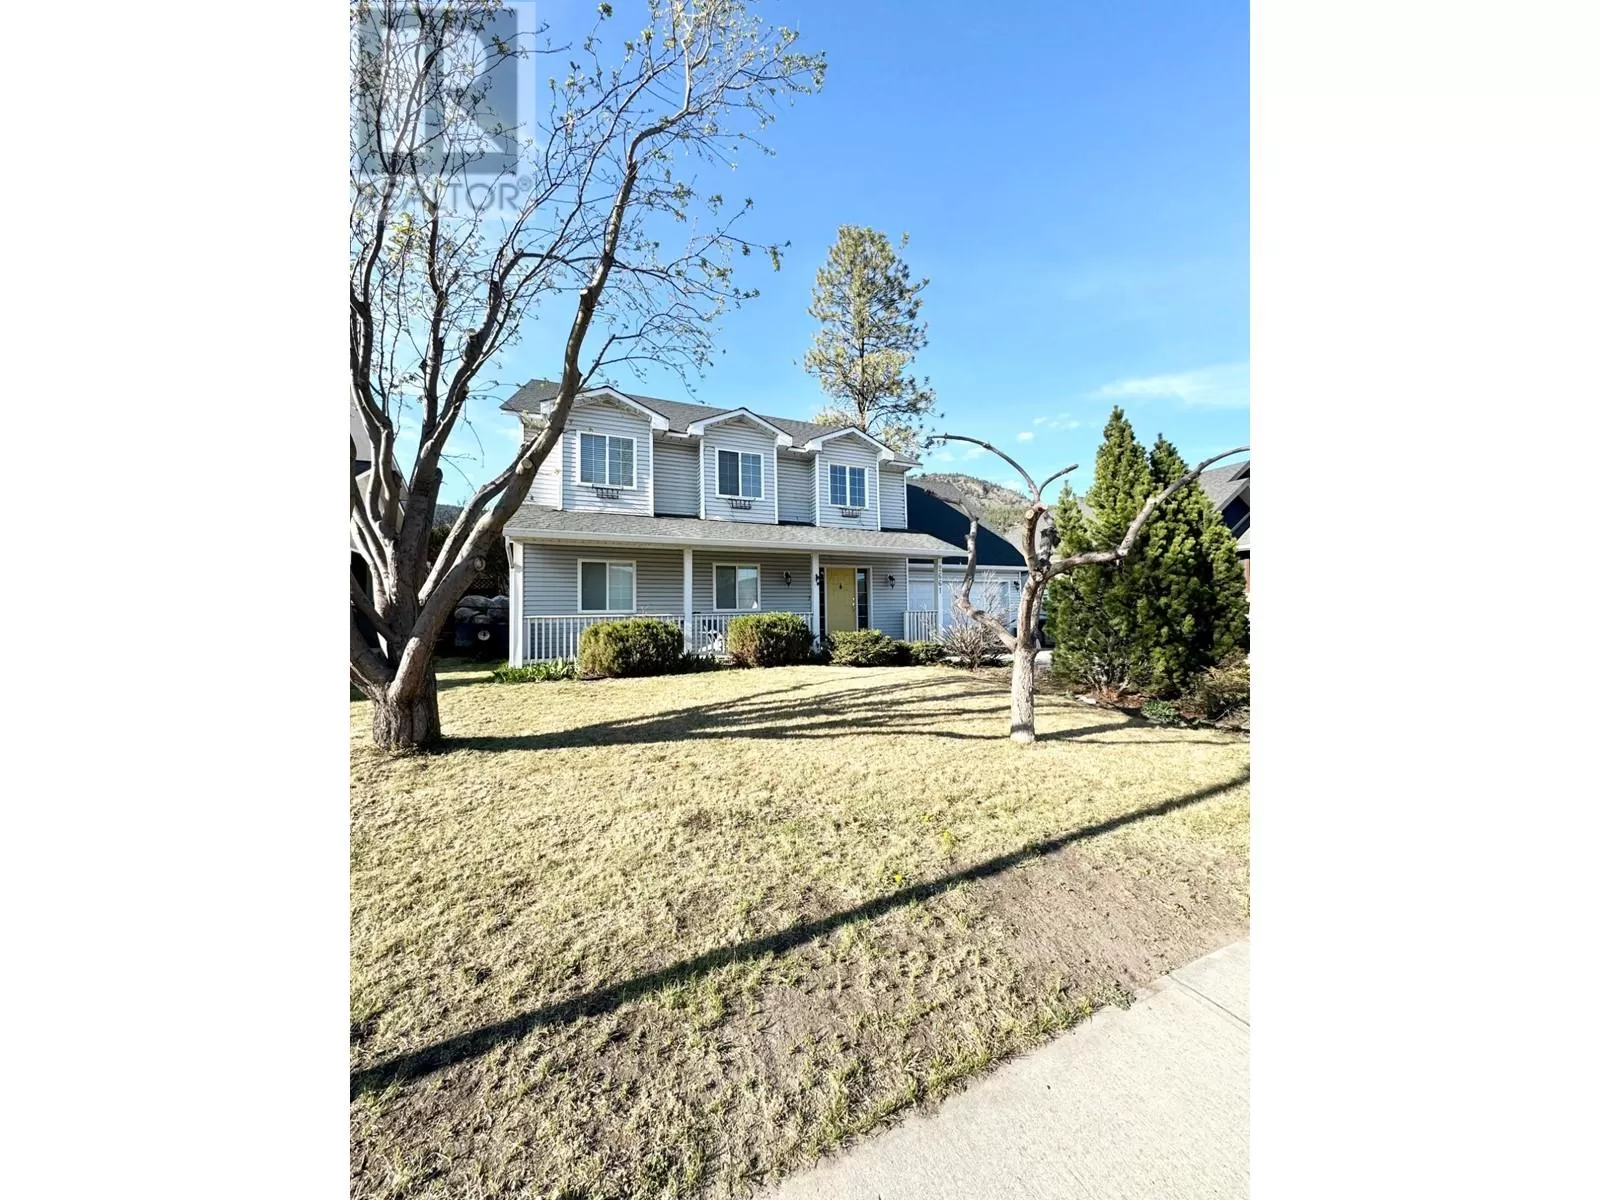 House for rent: 2661 Forksdale Ave, Merritt, British Columbia V1K 1P8